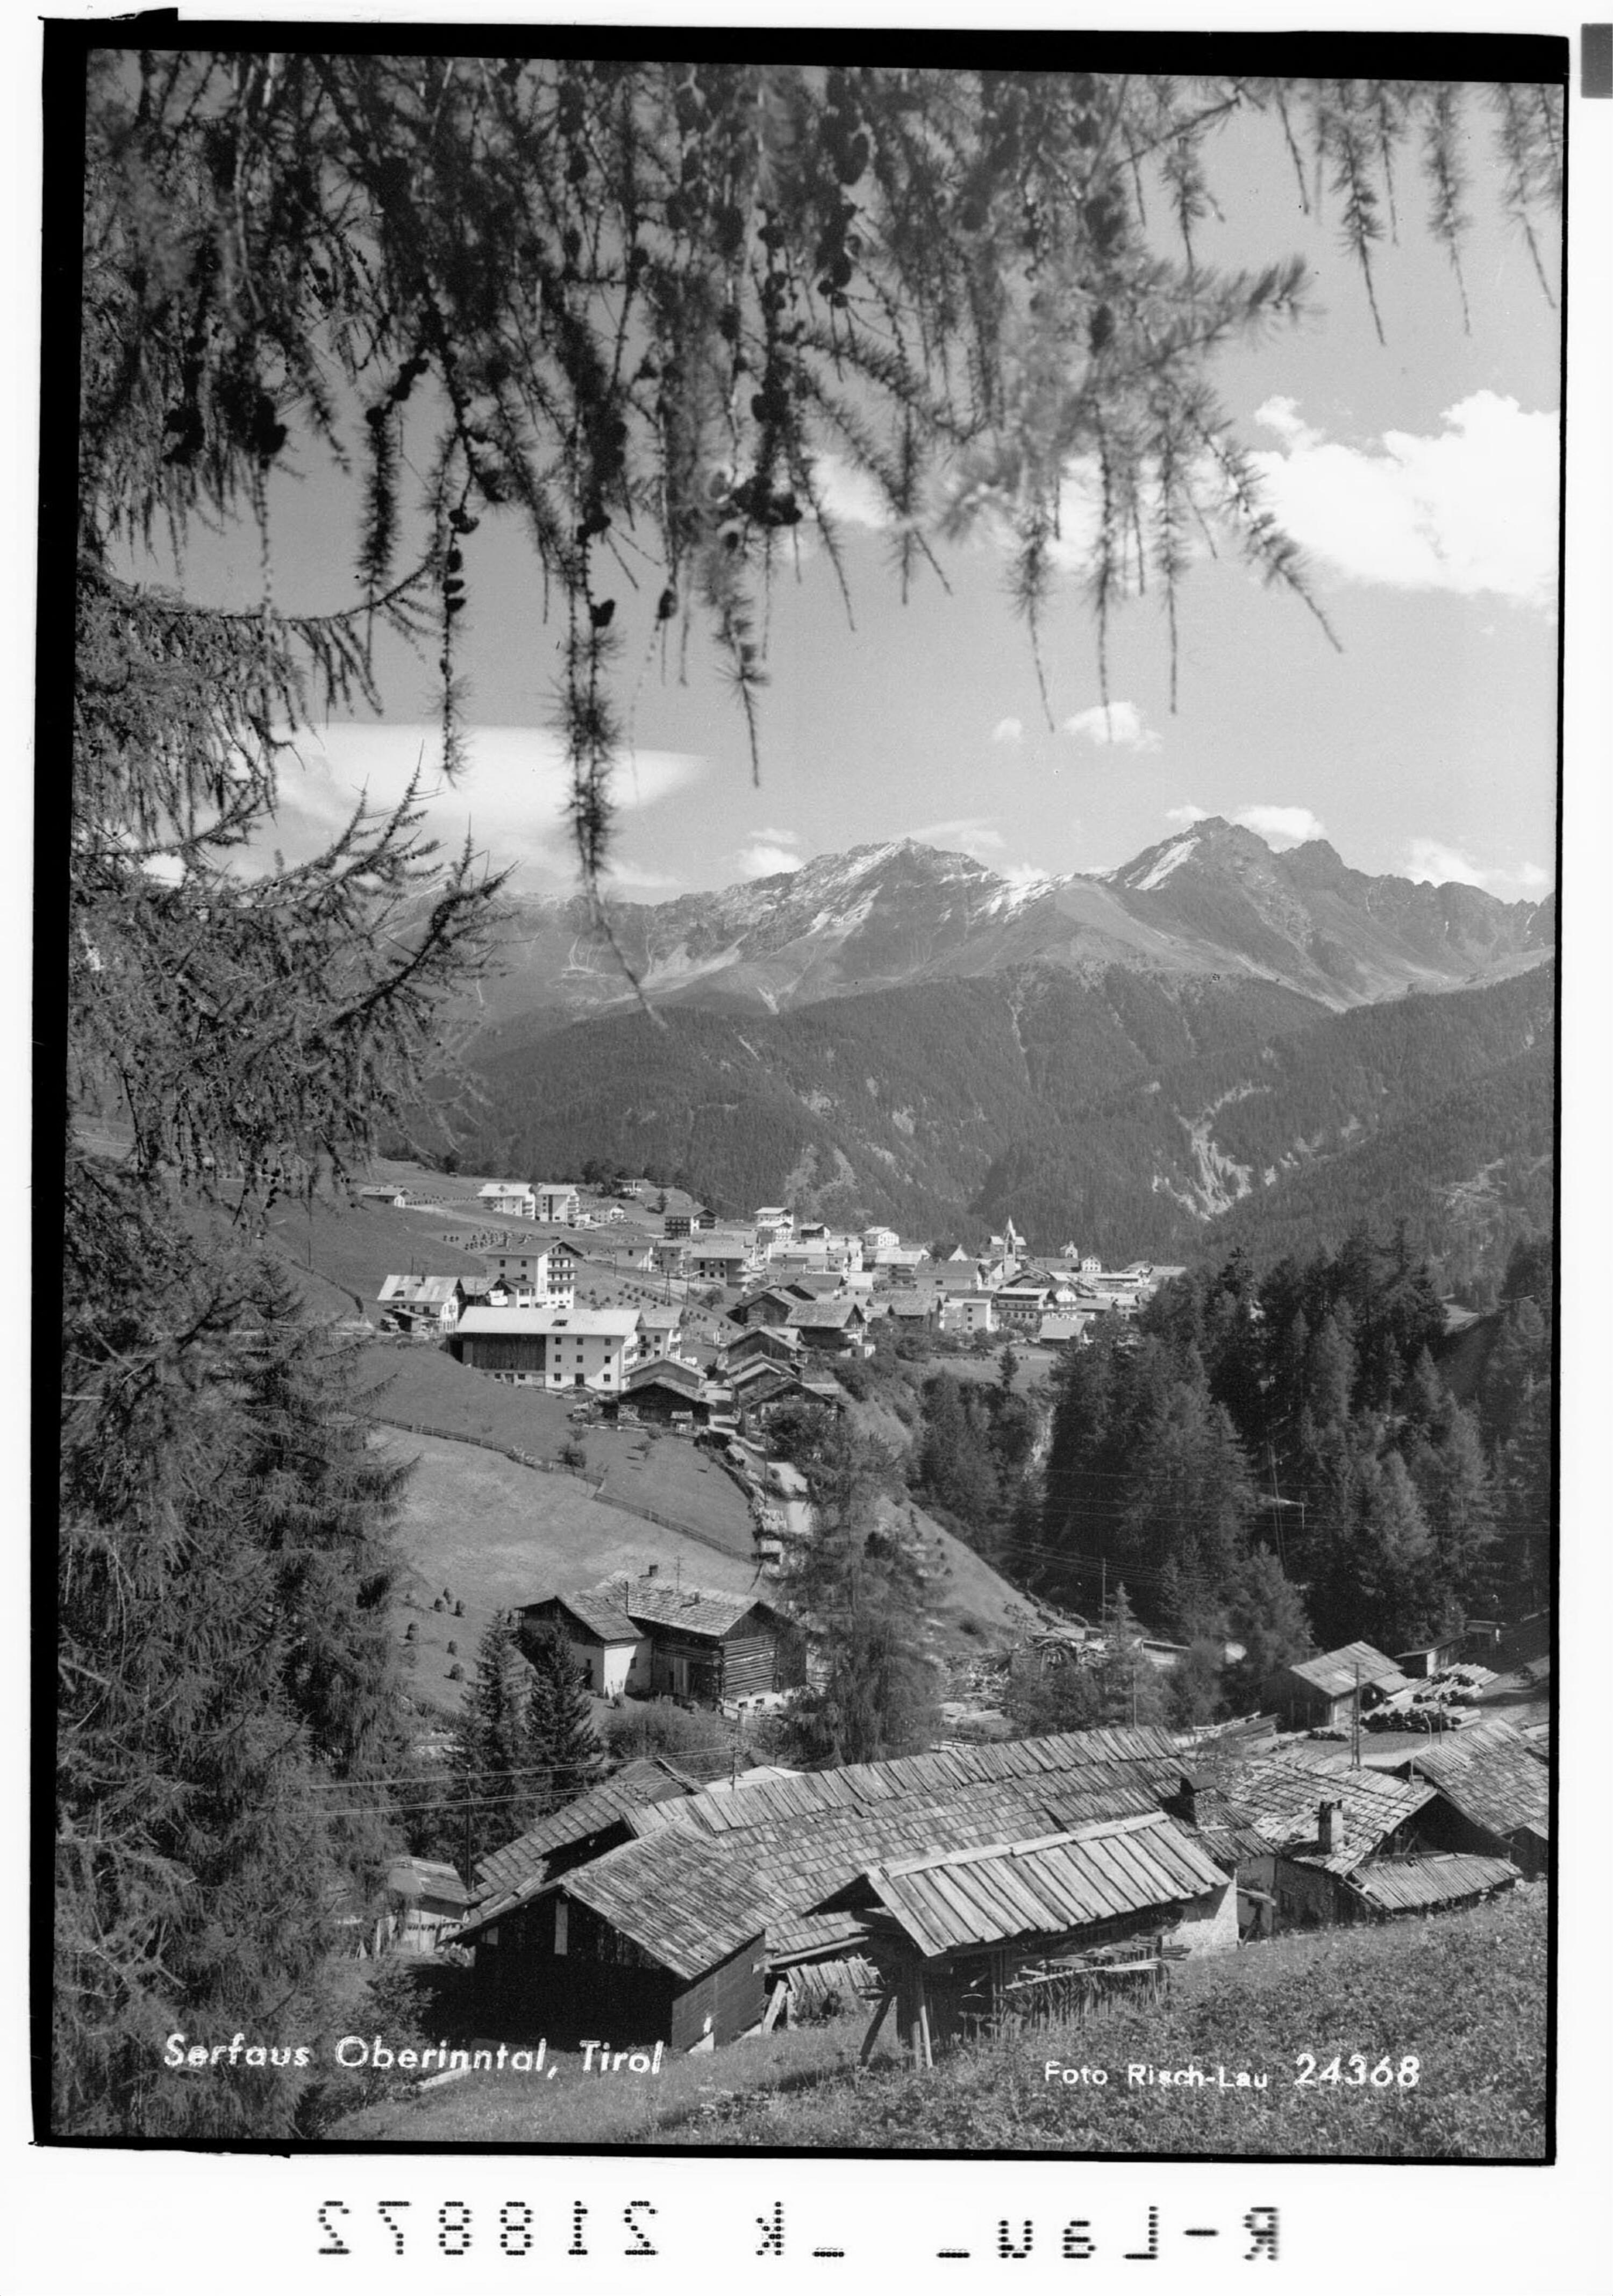 Serfaus Oberinntal, Tirol></div>


    <hr>
    <div class=